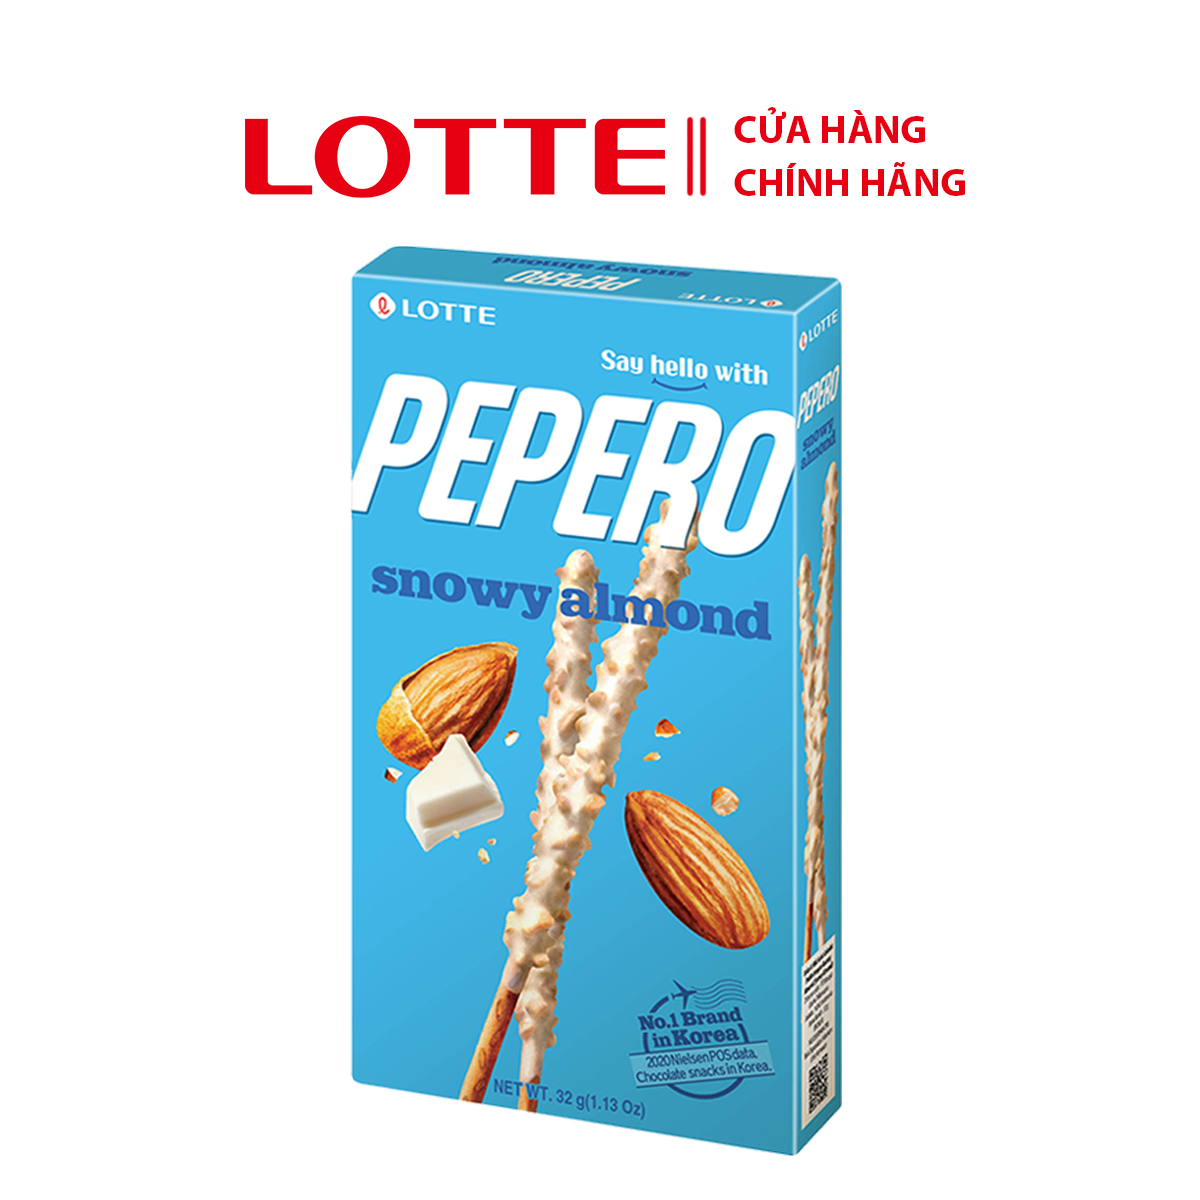 [SỈ/LẺ] Bánh que Lotte Pepero vị Sô cô la trắng hạnh nhân Snowy Almond